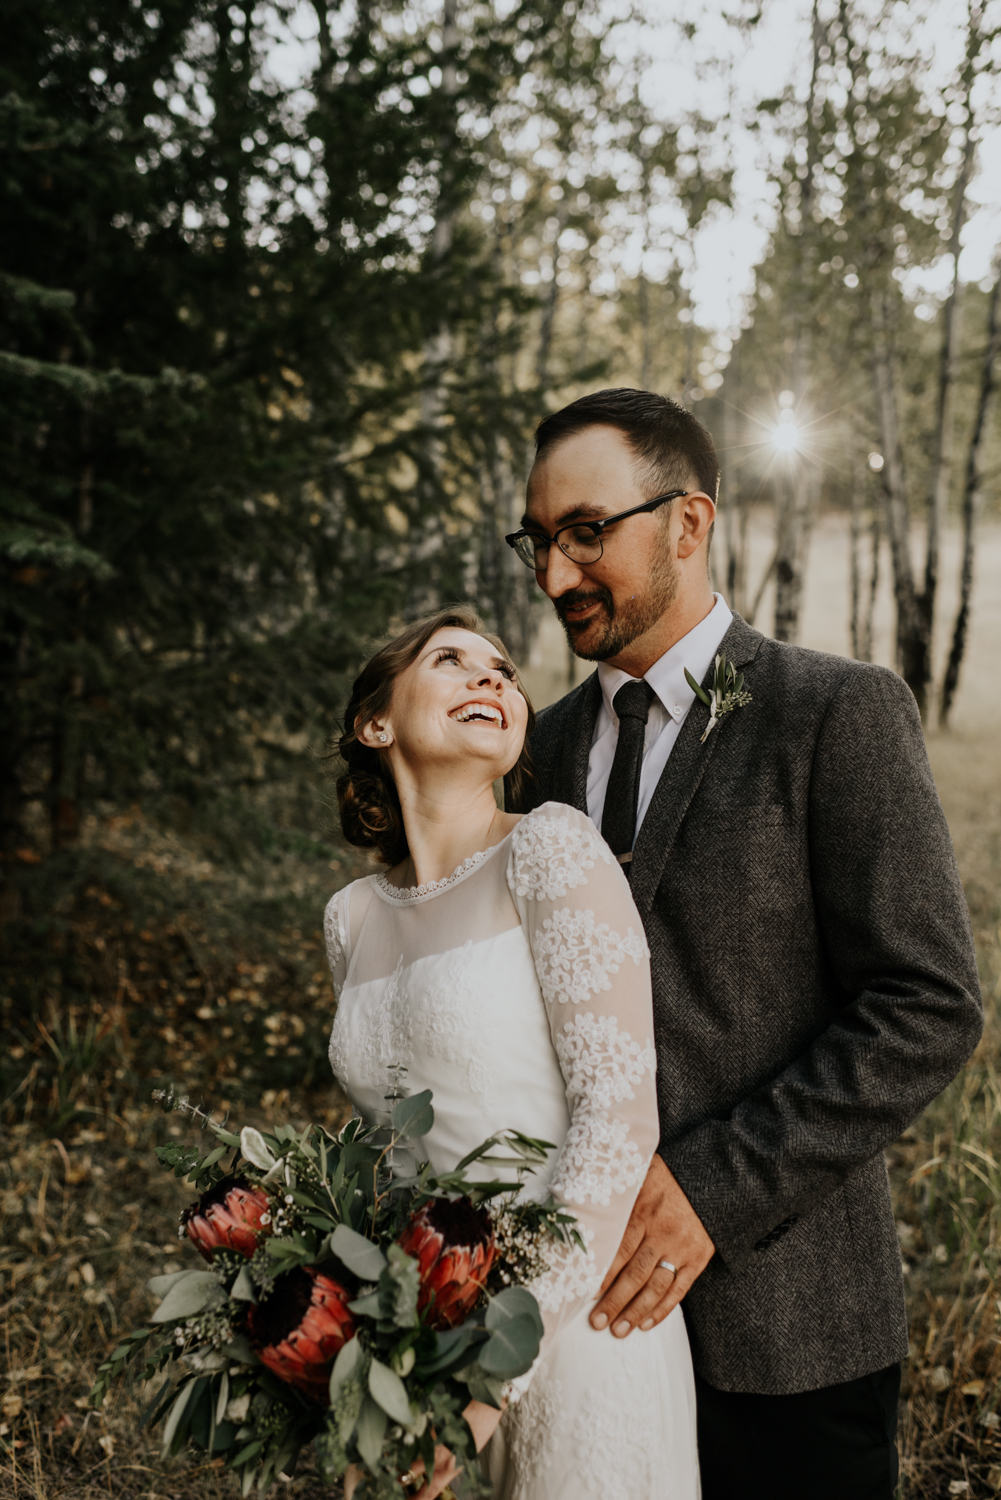 Intimate Mountain Wedding Bride and Groom Photos in Meadow Creek, Pine Colorado